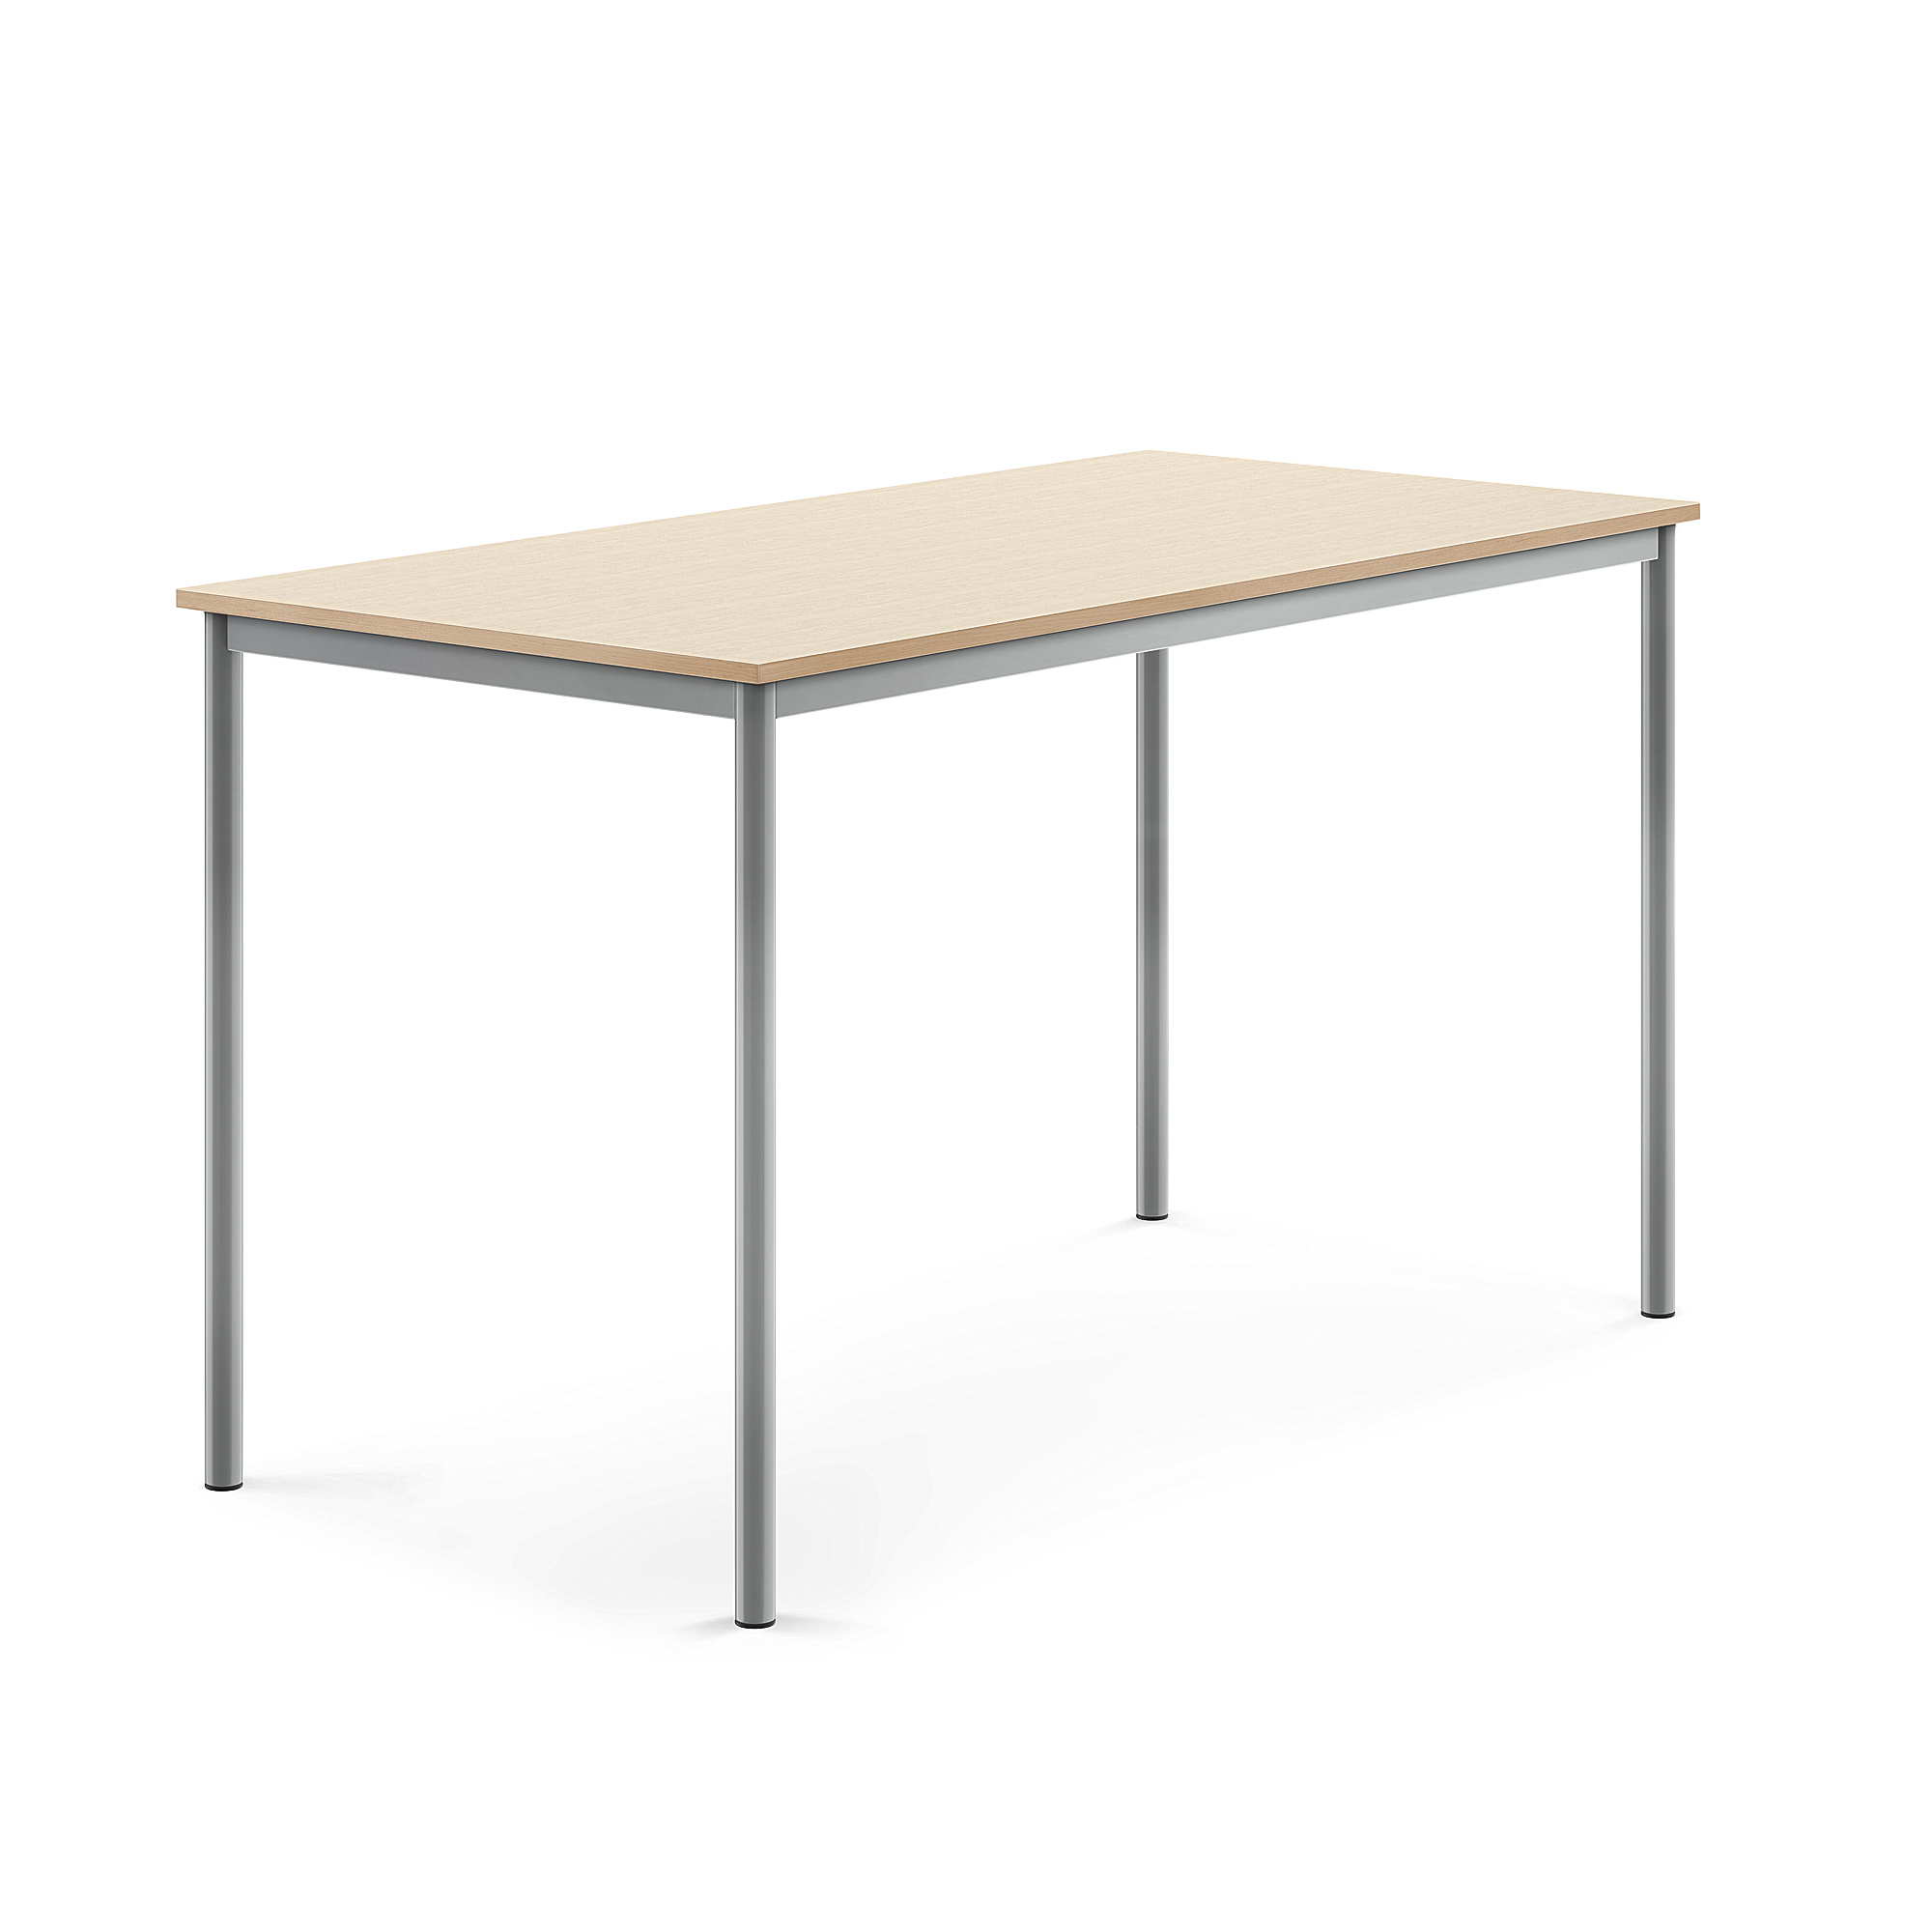 Stůl BORÅS, 1600x800x900 mm, stříbrné nohy, HPL deska, bříza